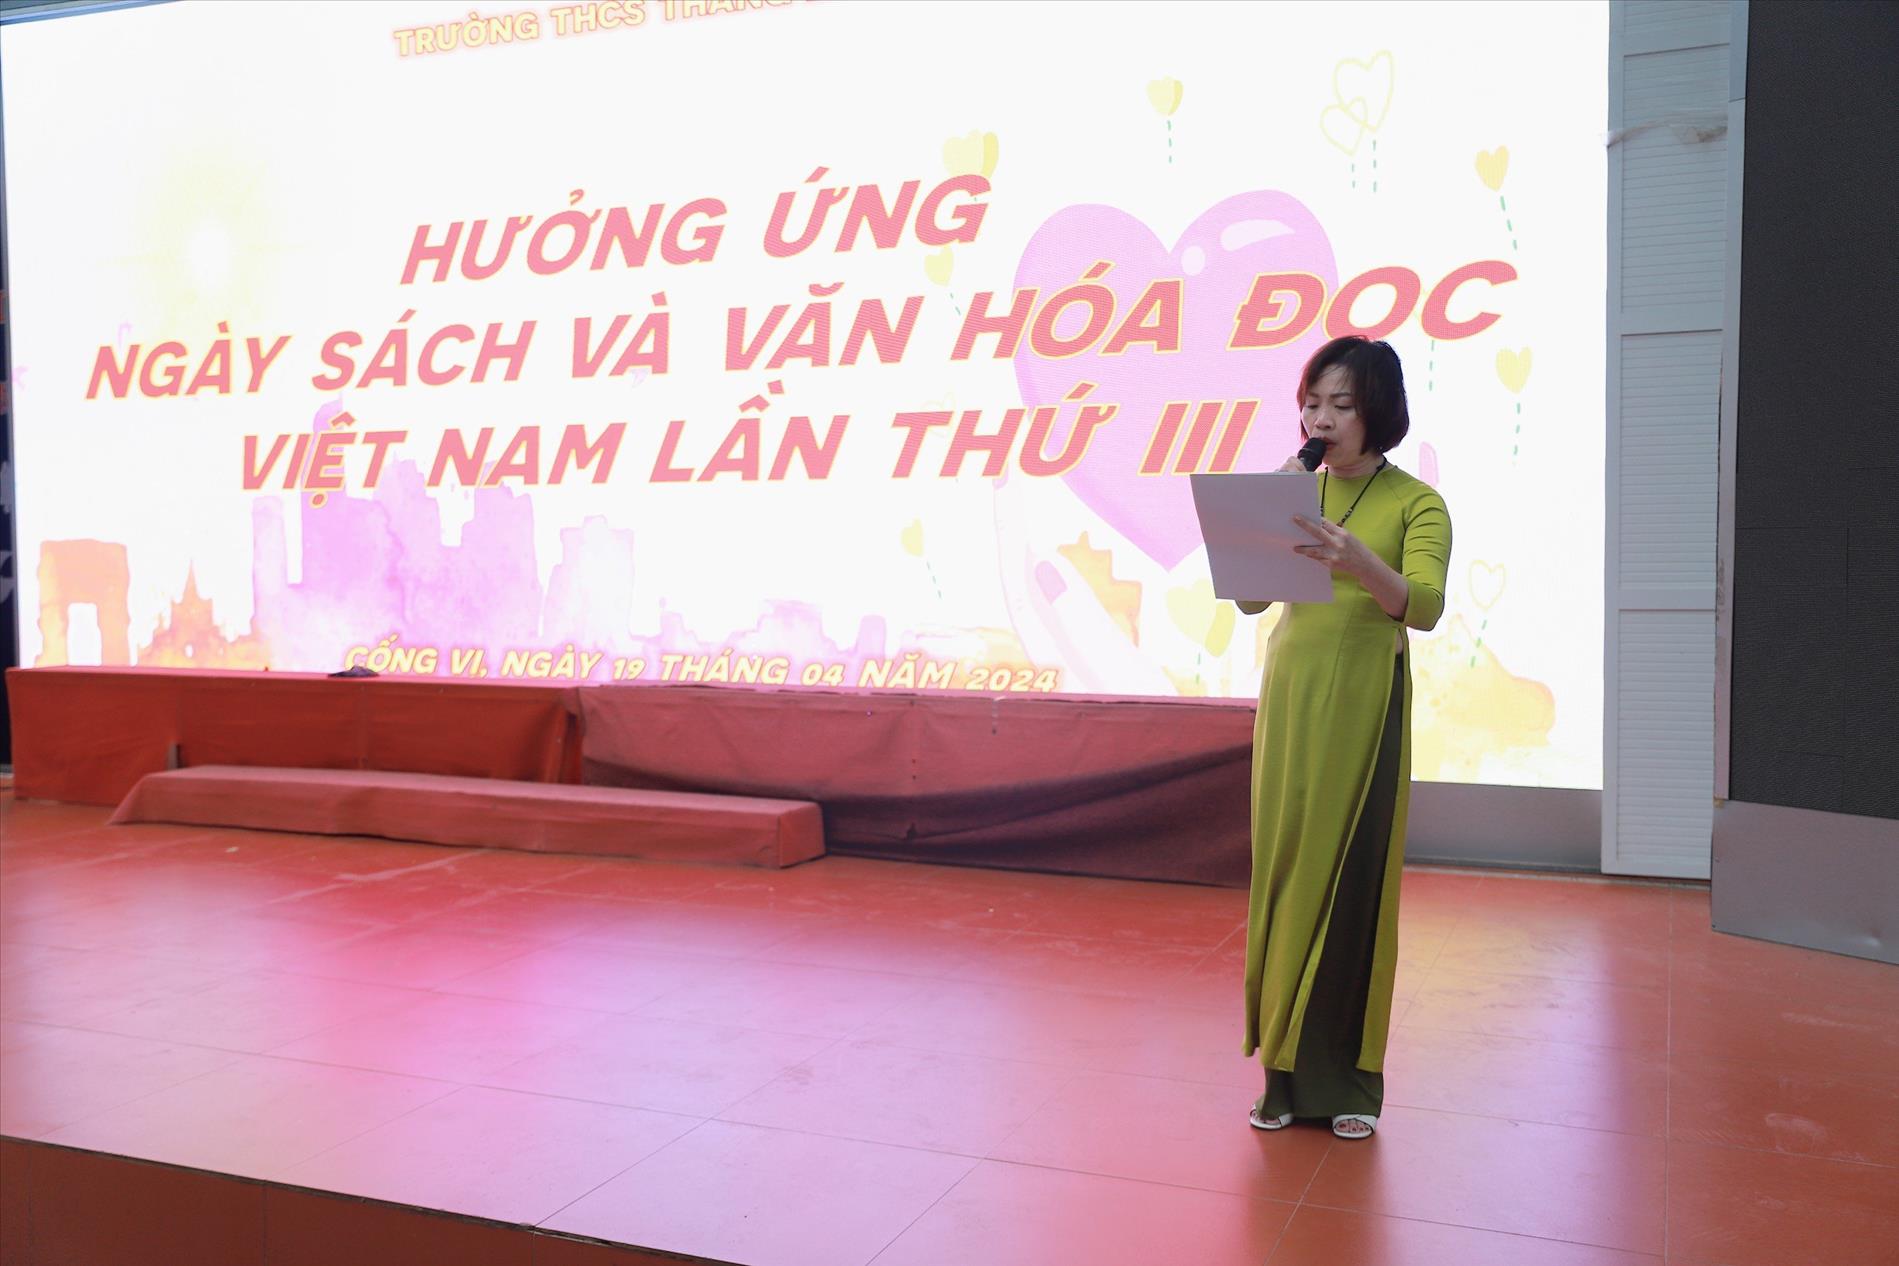 Trường THCS Thăng Long hưởng ứng và tổ chức ngày sách và văn hóa đọc Việt Nam lần thứ III